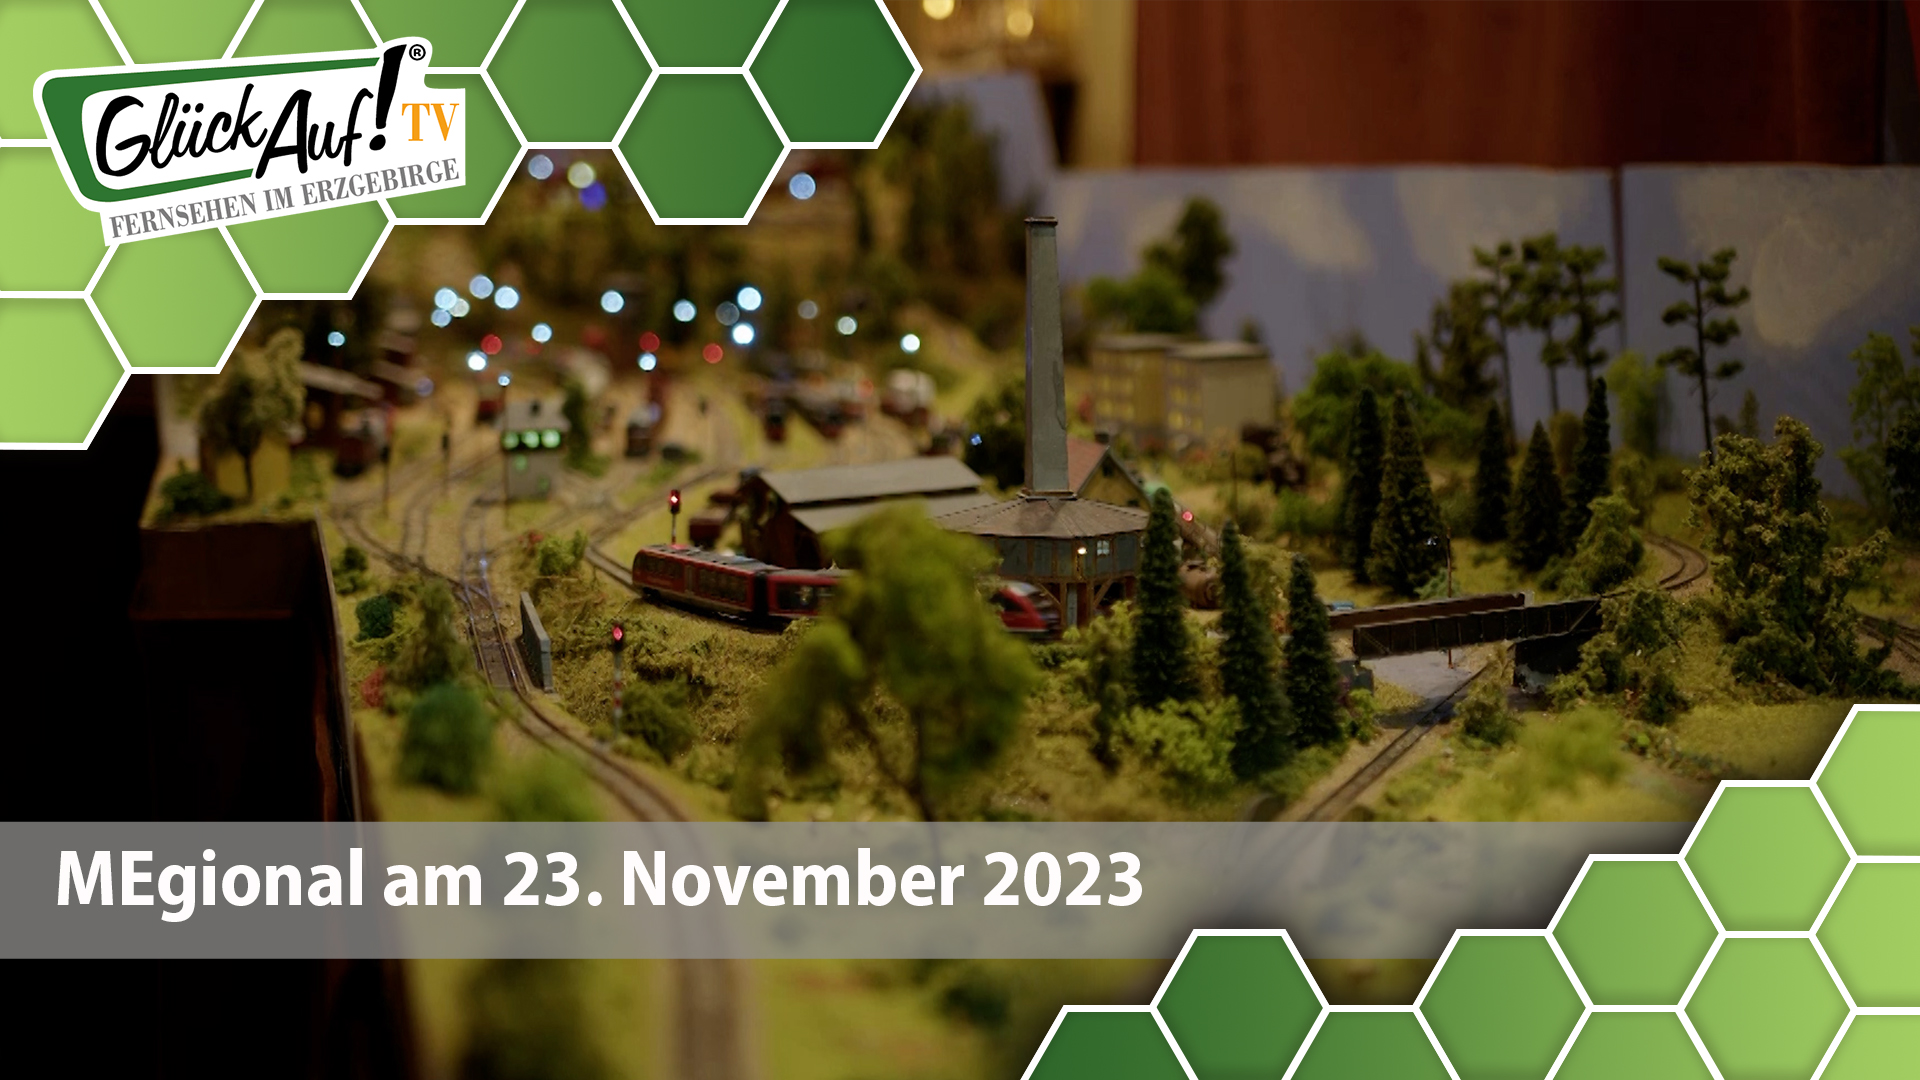 MEgional am 23. November 2023 mit der Modellbahnausstellung in Zschopau